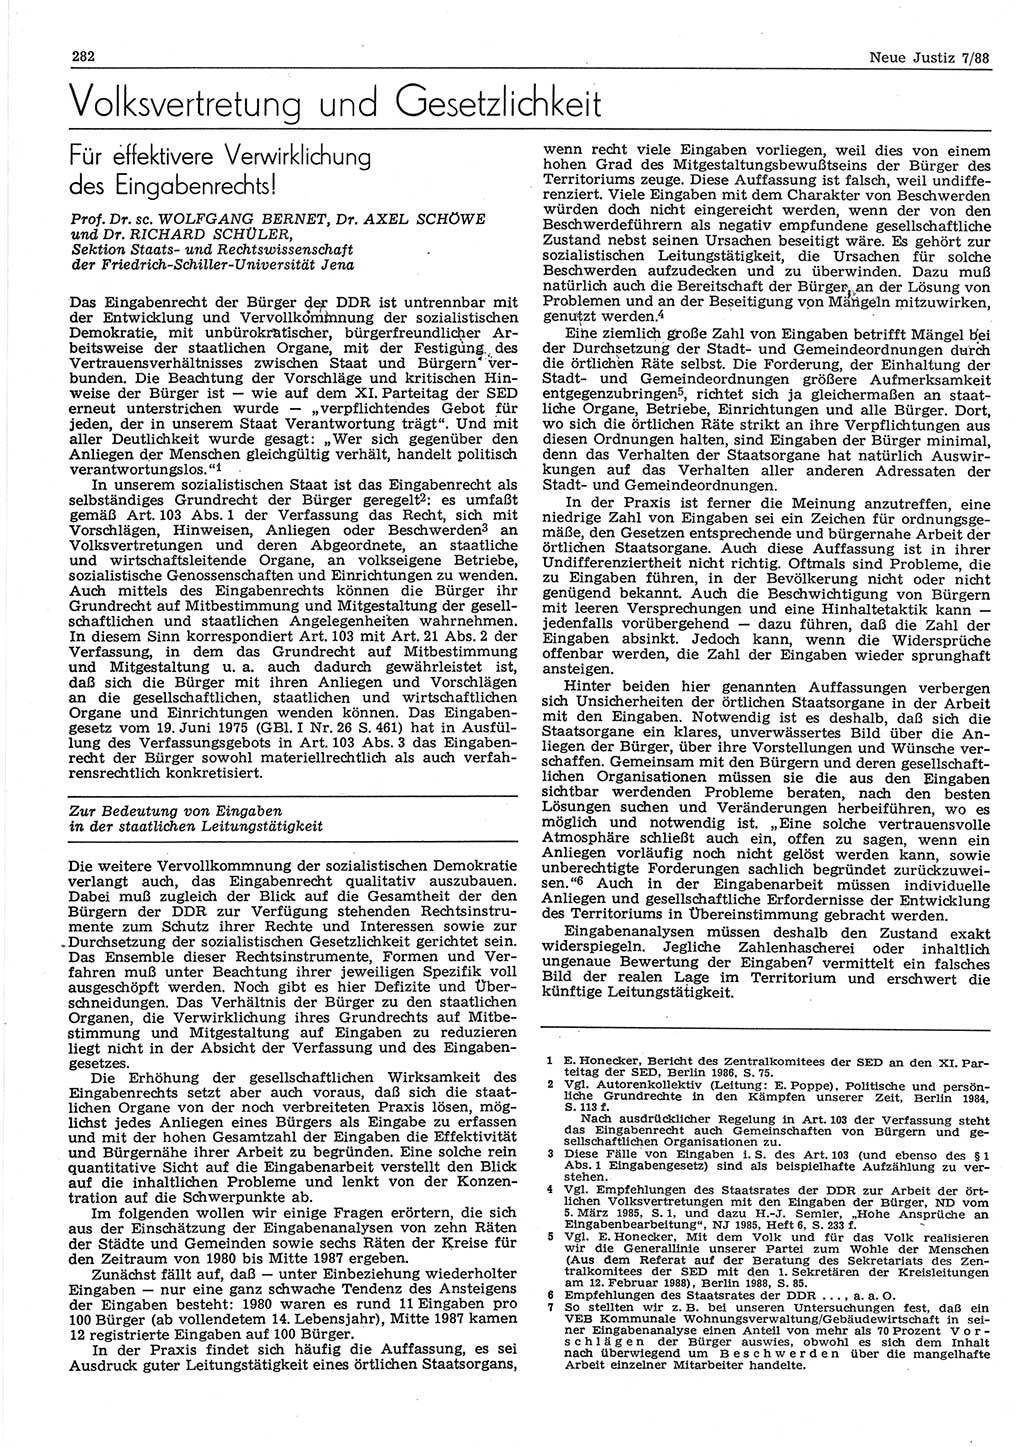 Neue Justiz (NJ), Zeitschrift für sozialistisches Recht und Gesetzlichkeit [Deutsche Demokratische Republik (DDR)], 42. Jahrgang 1988, Seite 282 (NJ DDR 1988, S. 282)